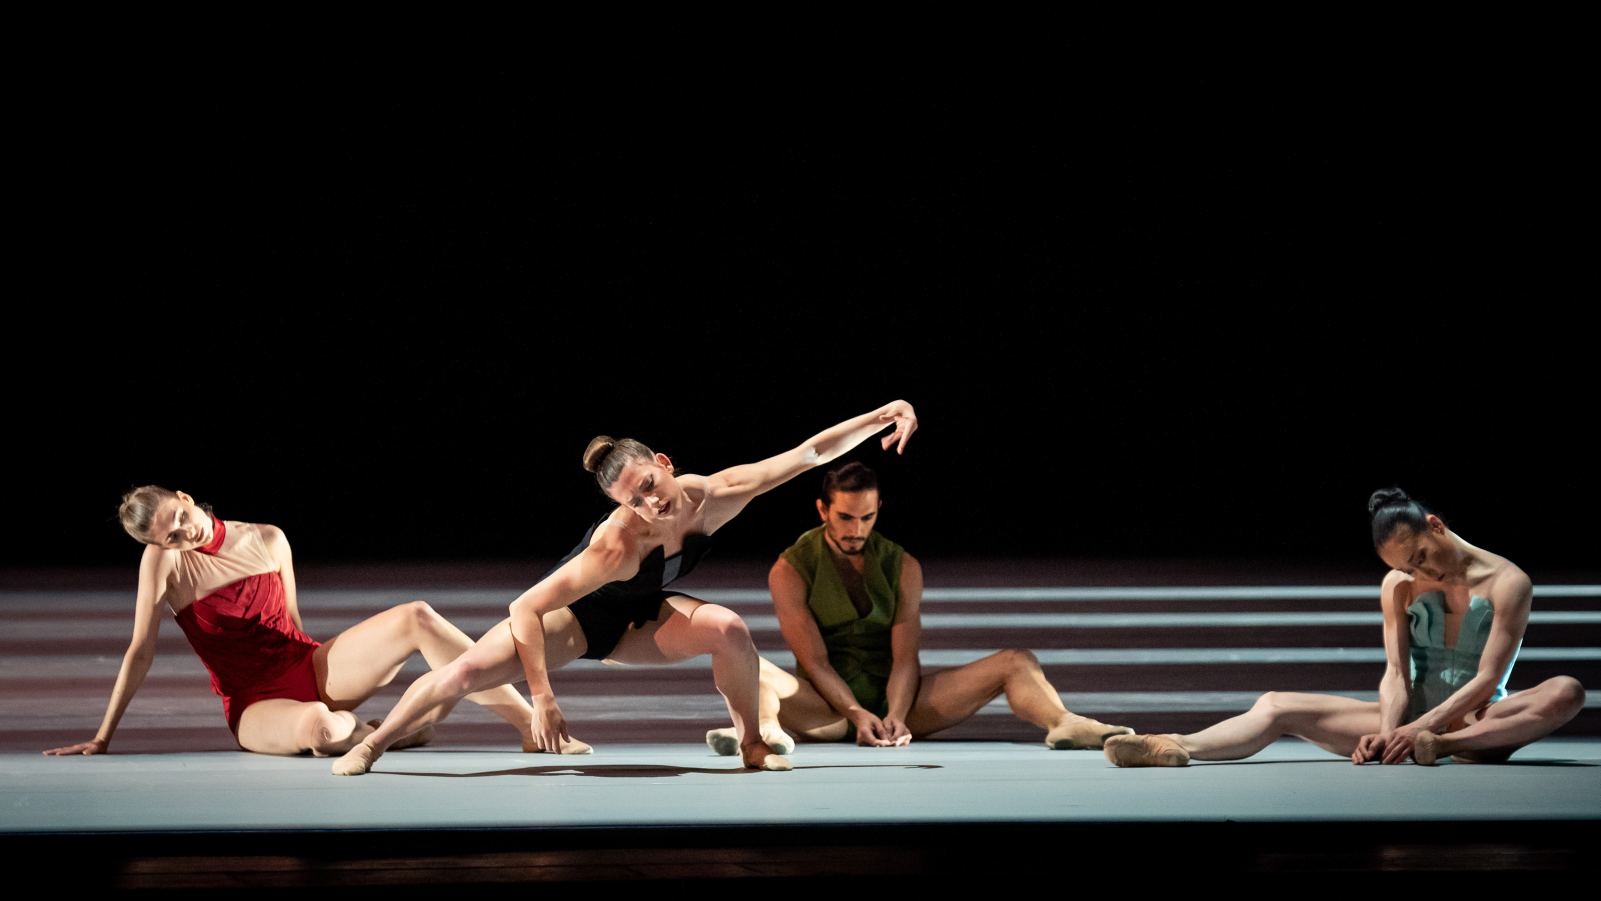 5. V.Csonka, D.Vizcayo, H.C.Kinney, and Y.Kato, “Die Jahreszeiten” by M.Schläpfer, Vienna State Ballet 2022 © Vienna State Ballet / A.Taylor